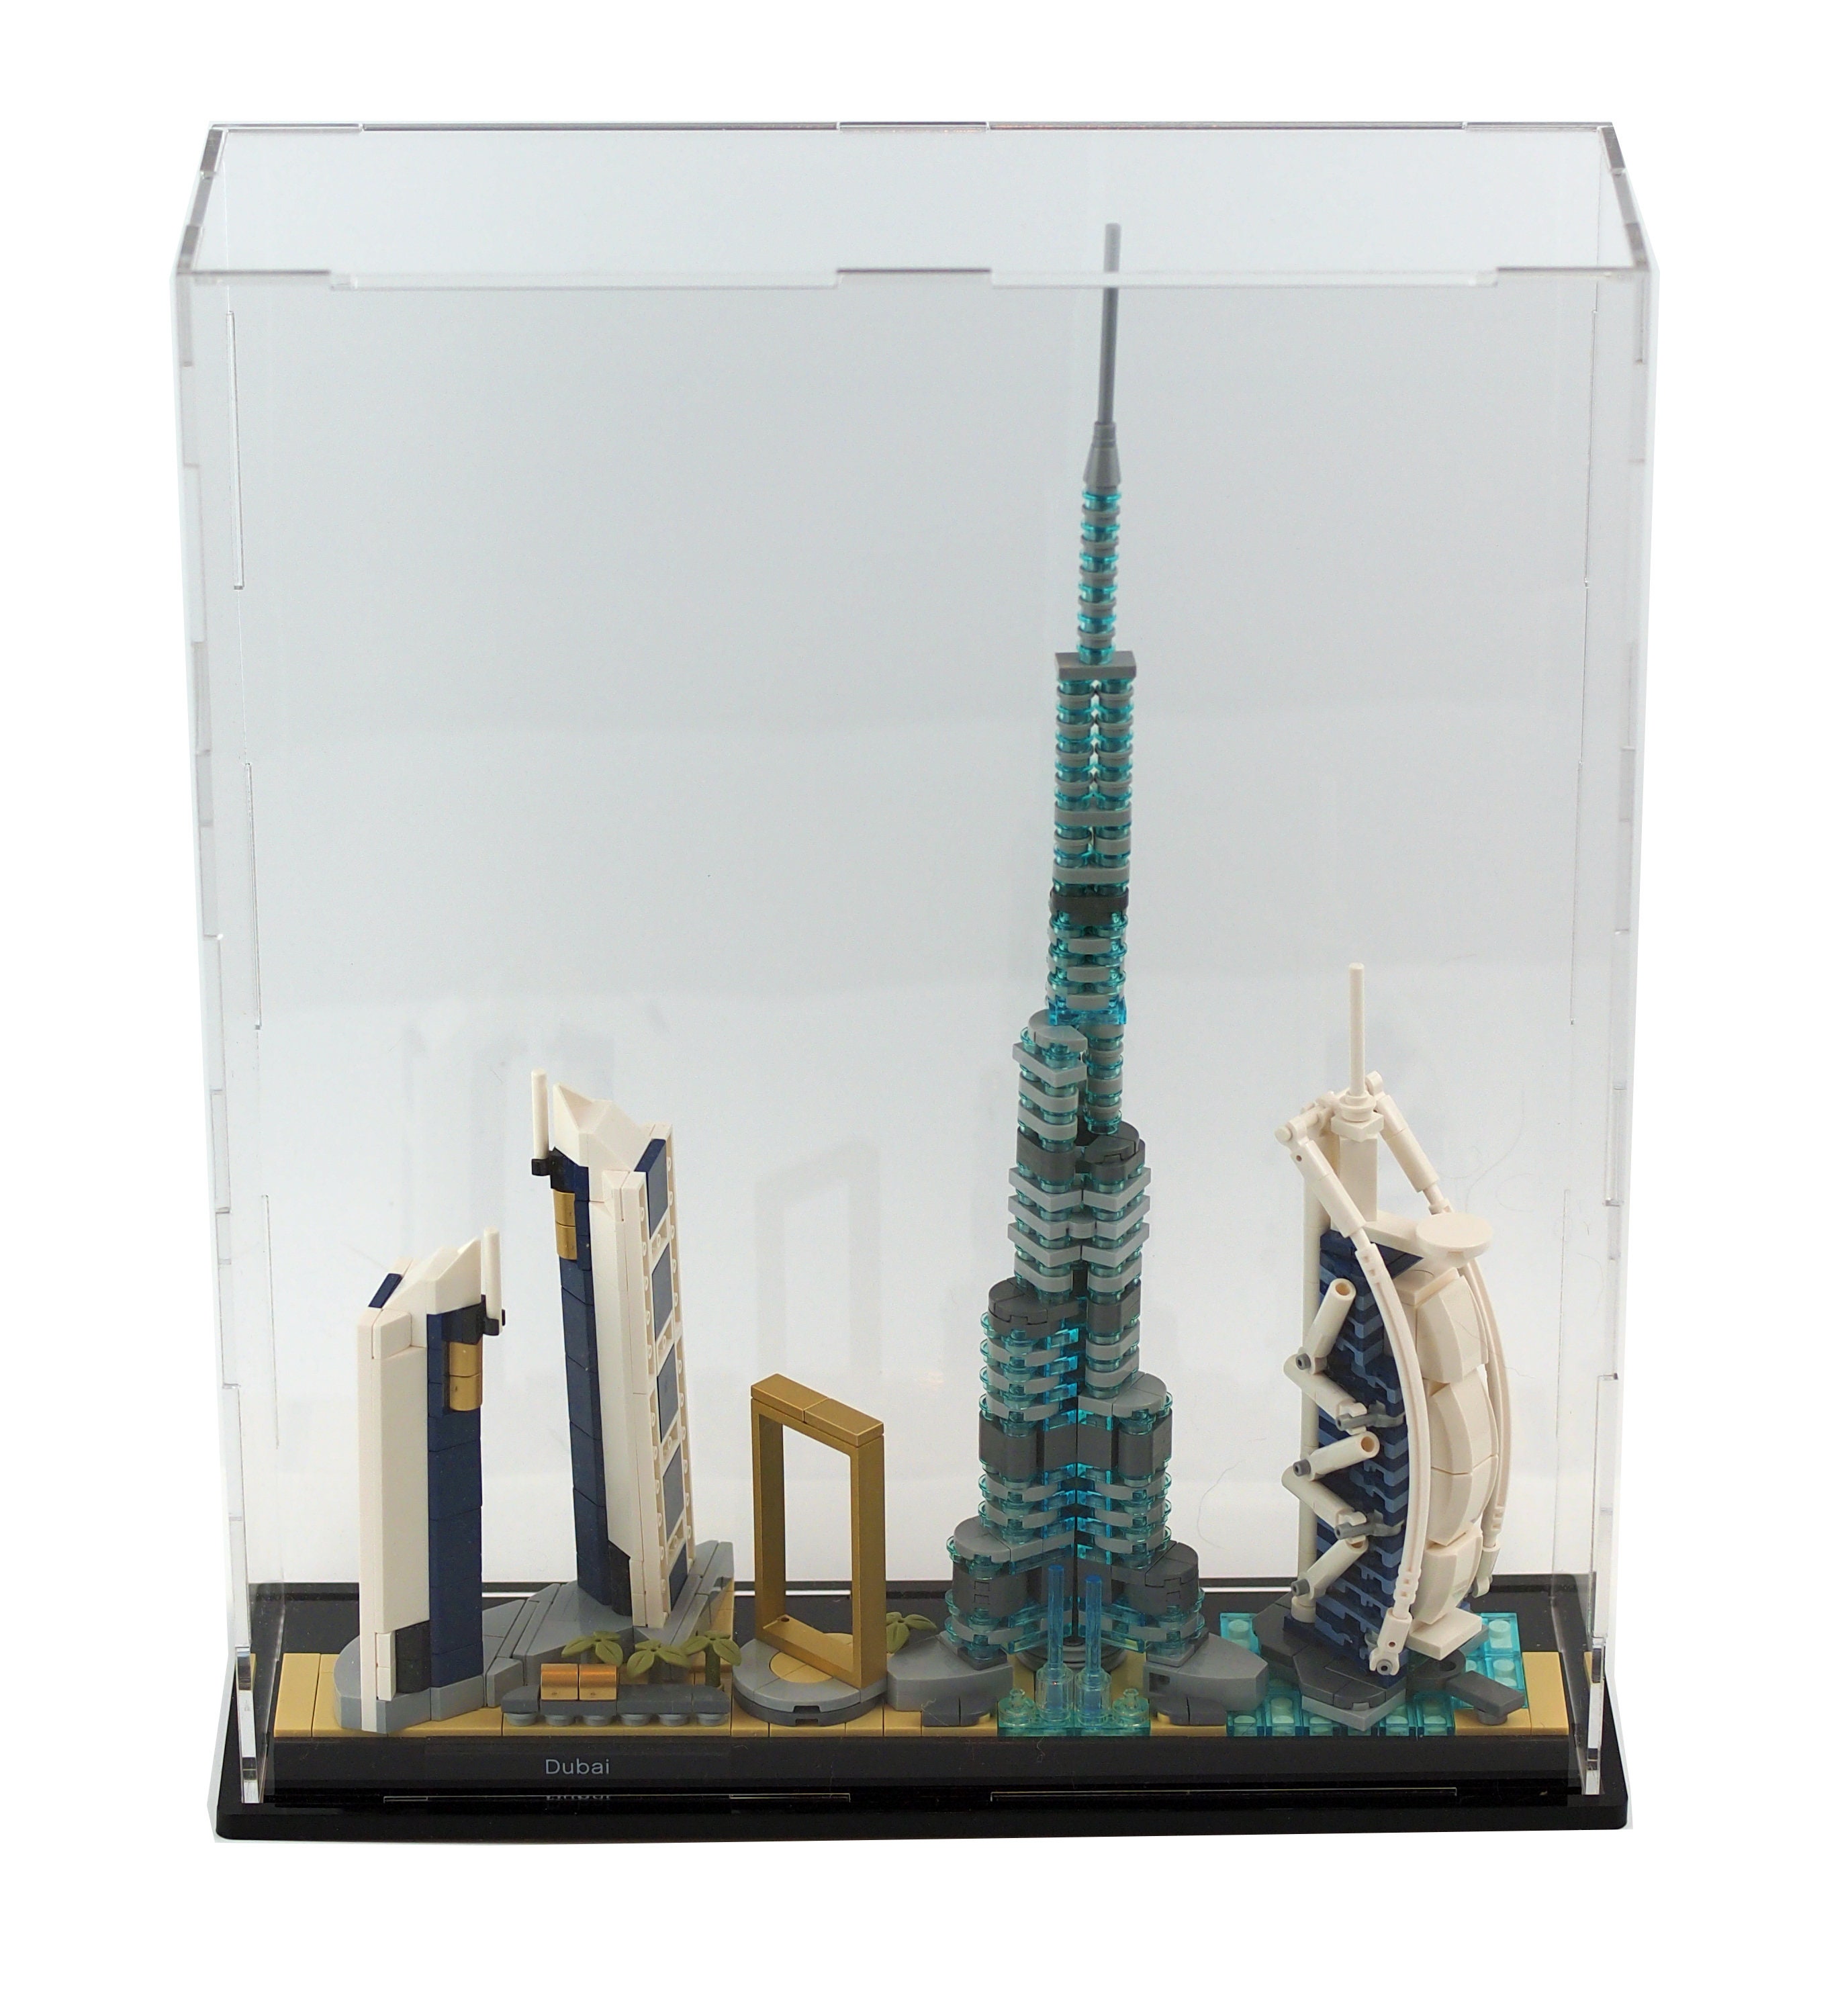 bede Kronisk kaldenavn Display Case for LEGO Dubai Architecture Skyline 21052 Set - Etsy